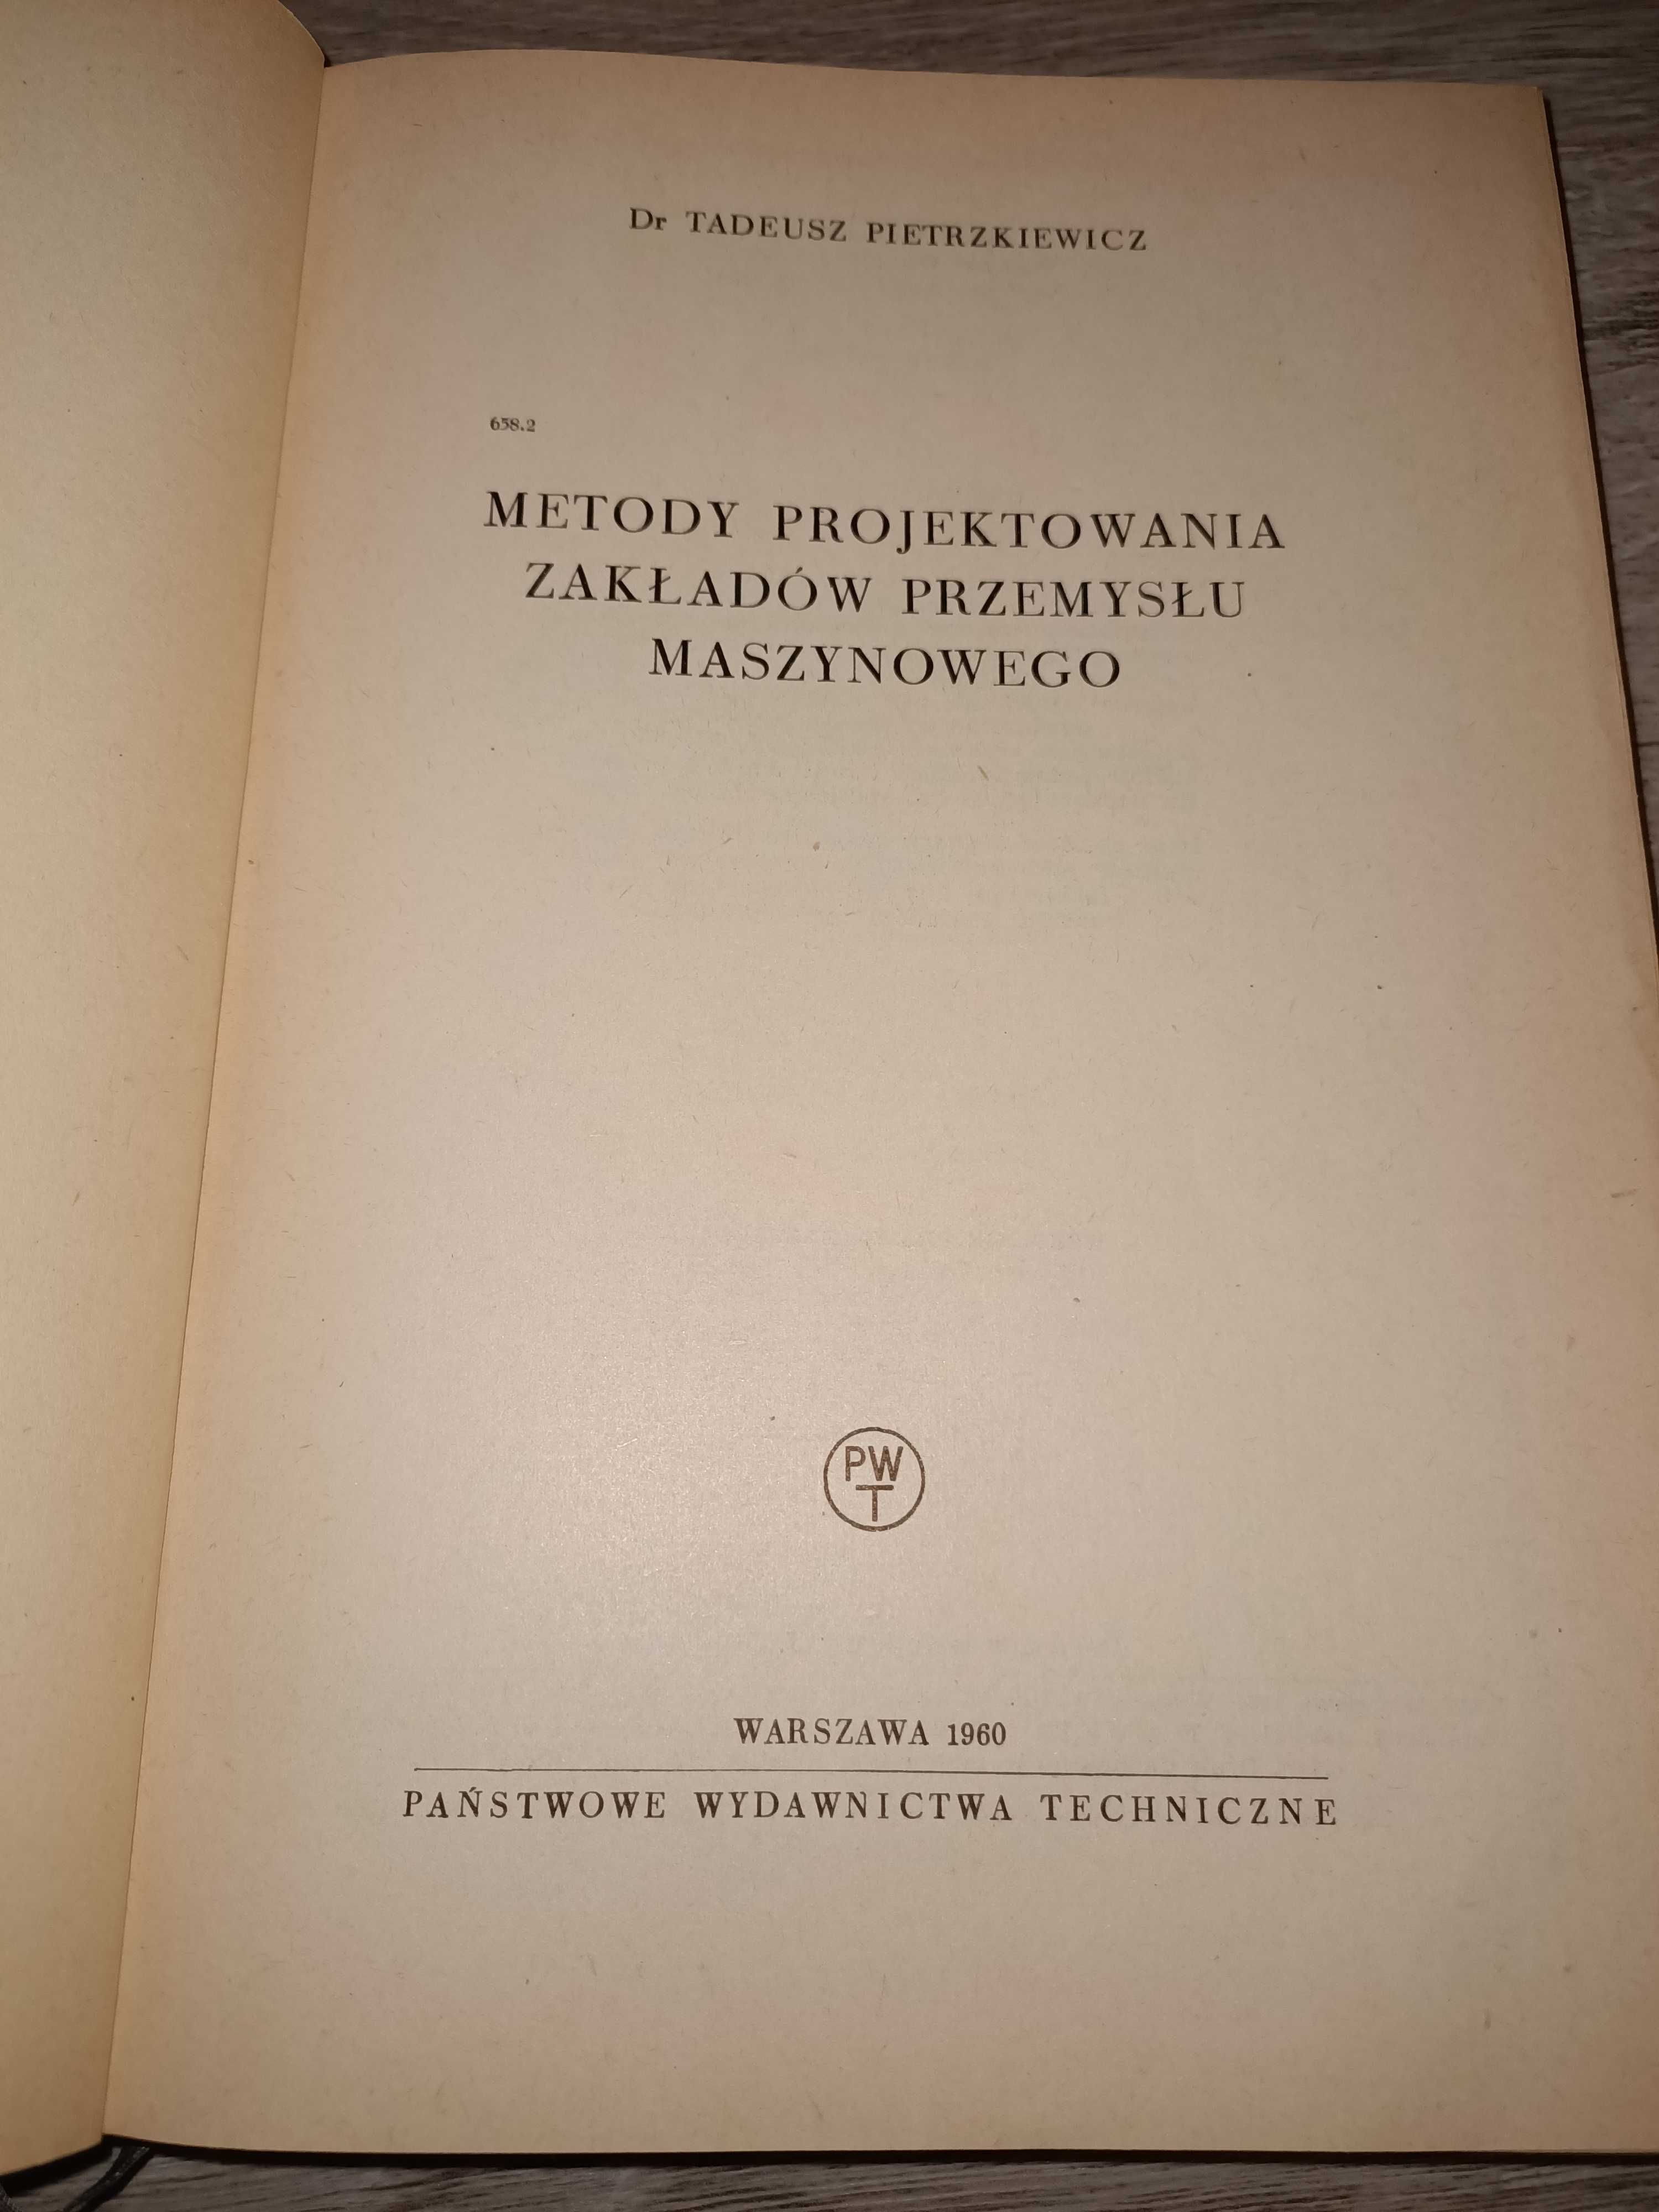 Metody projektowania zakładów przemysłu maszynowego T. Pietrzkiewicz